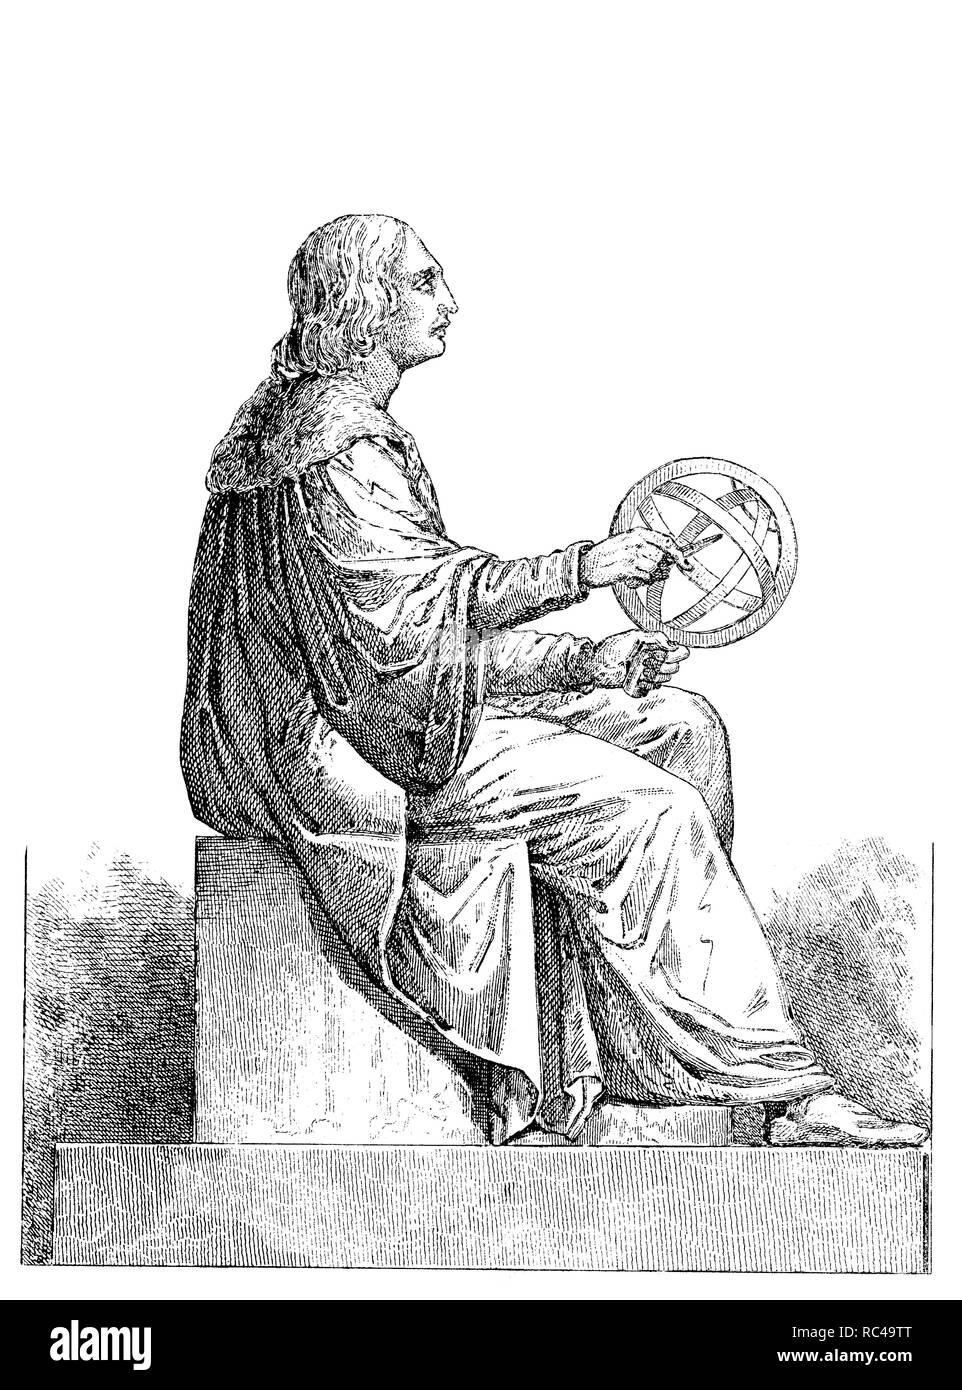 La Pologne. Sculpture de Nicolas Copernic (1473-1543), à Varsovie. Astronome polonais de la Renaissance qui ont formulé la théorie héliocentrique du système solaire, la tenue d'un astrolabe. 1850 Eau-forte. Banque D'Images